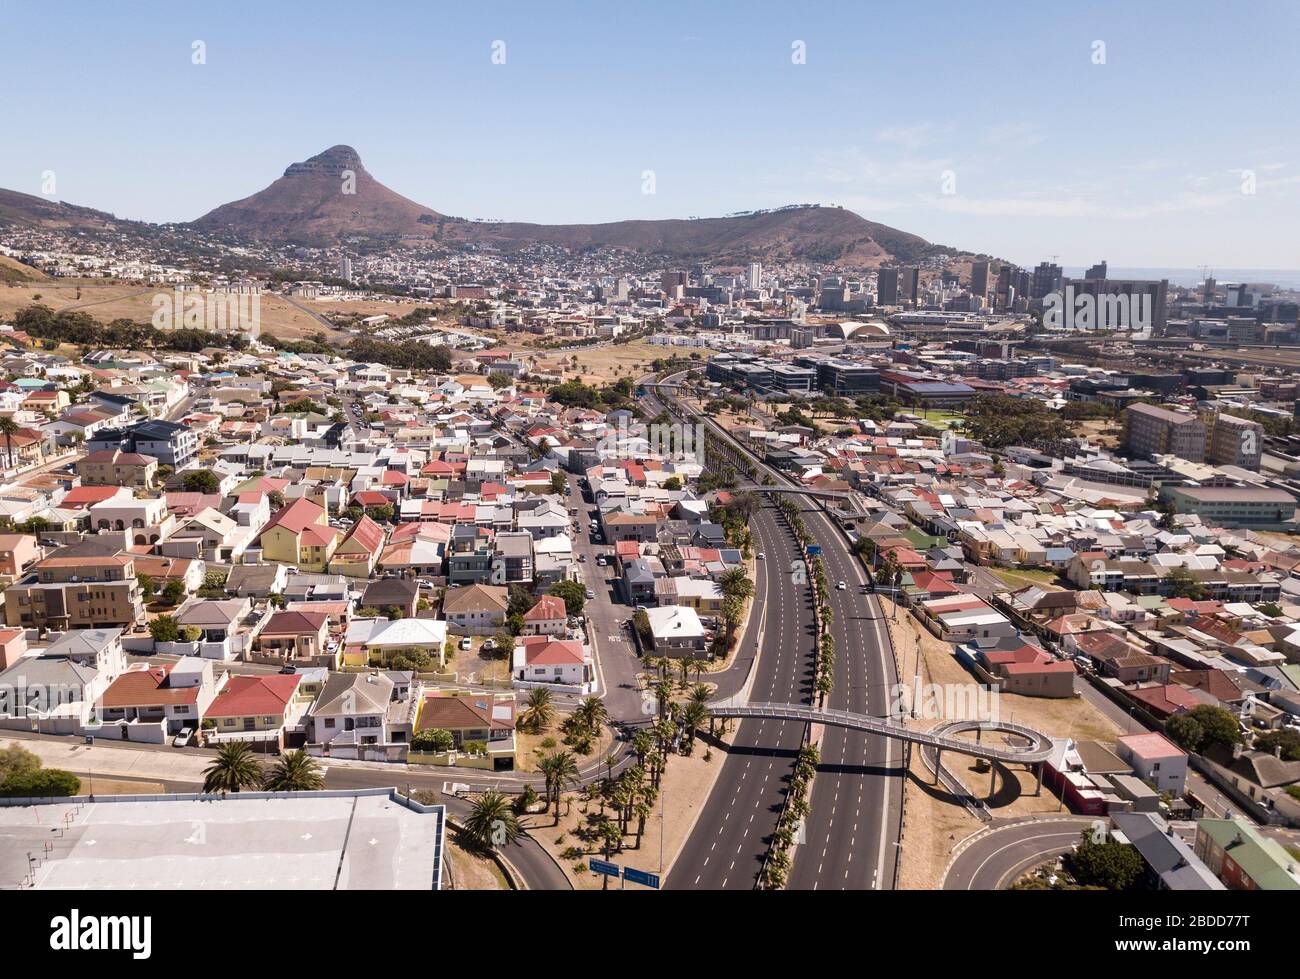 8 avril 2020 - le Cap, Afrique du Sud : vue aérienne sur le Cap lors de l'écluse de Covid-19, avec des rues vides Banque D'Images